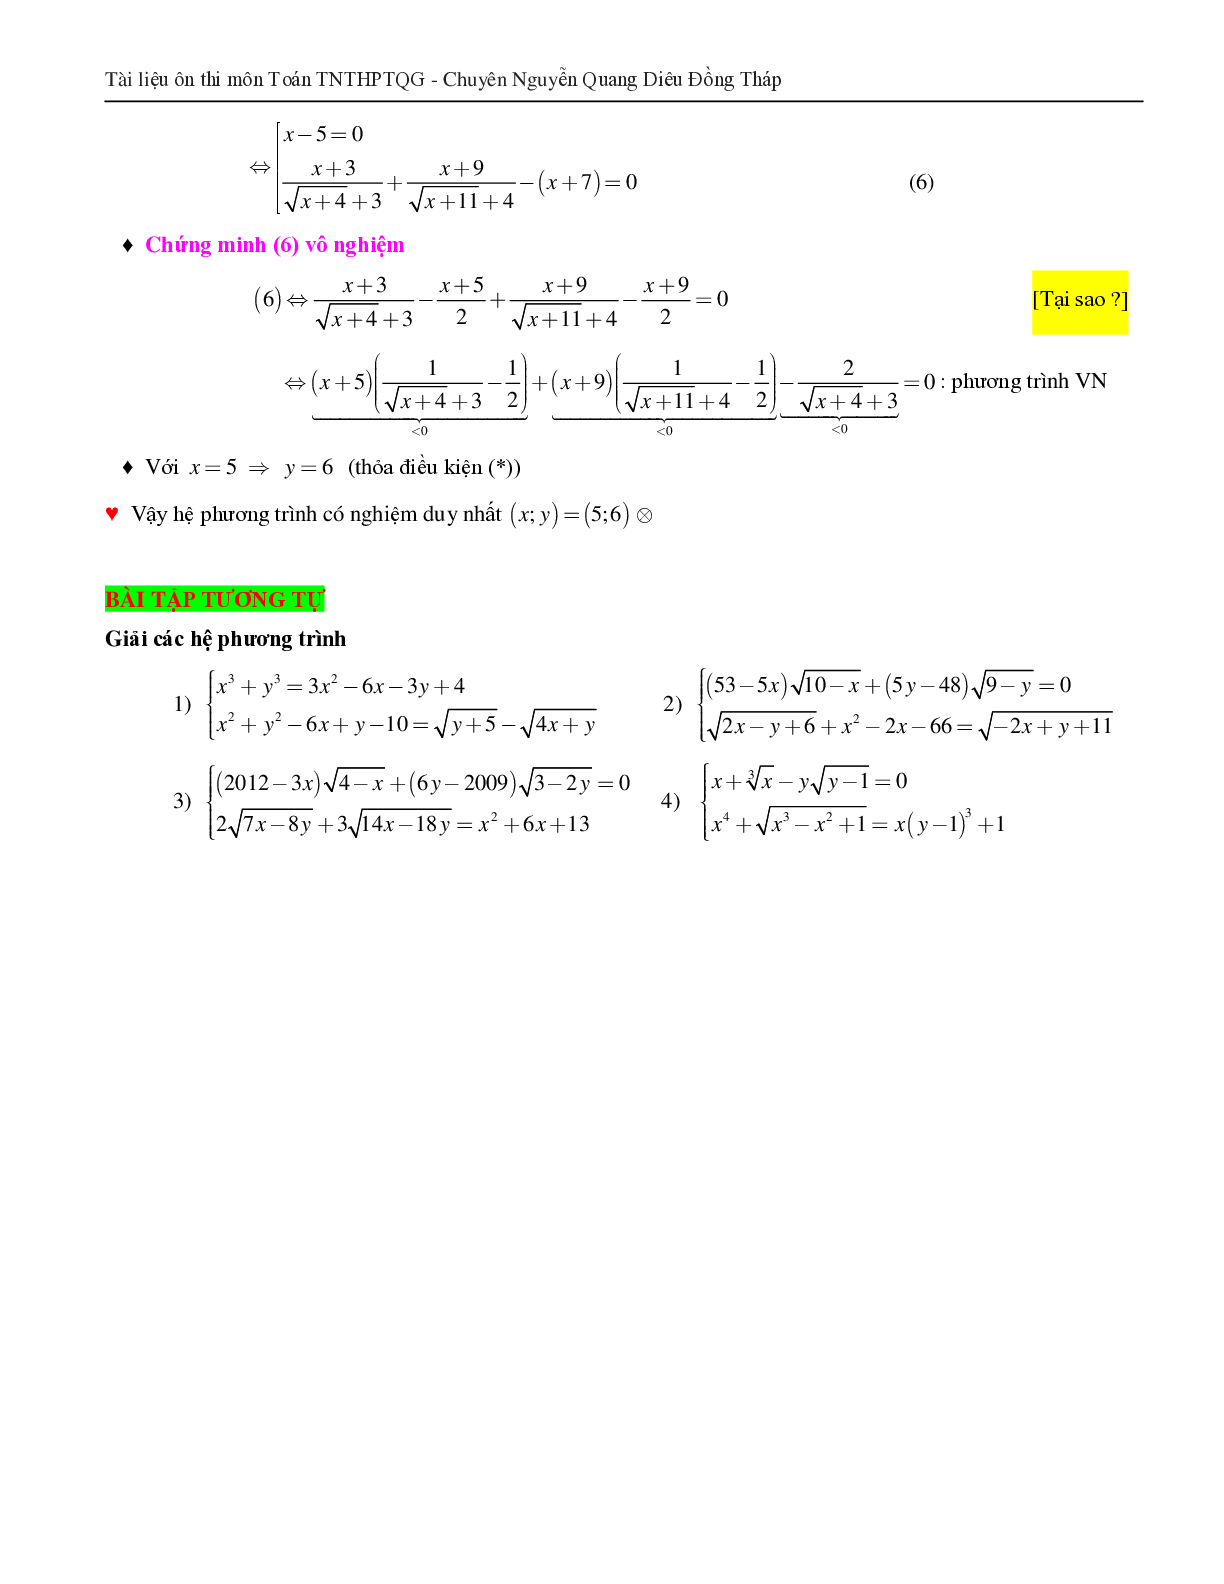 Giải hệ phương trình bằng phương pháp hàm số (trang 3)